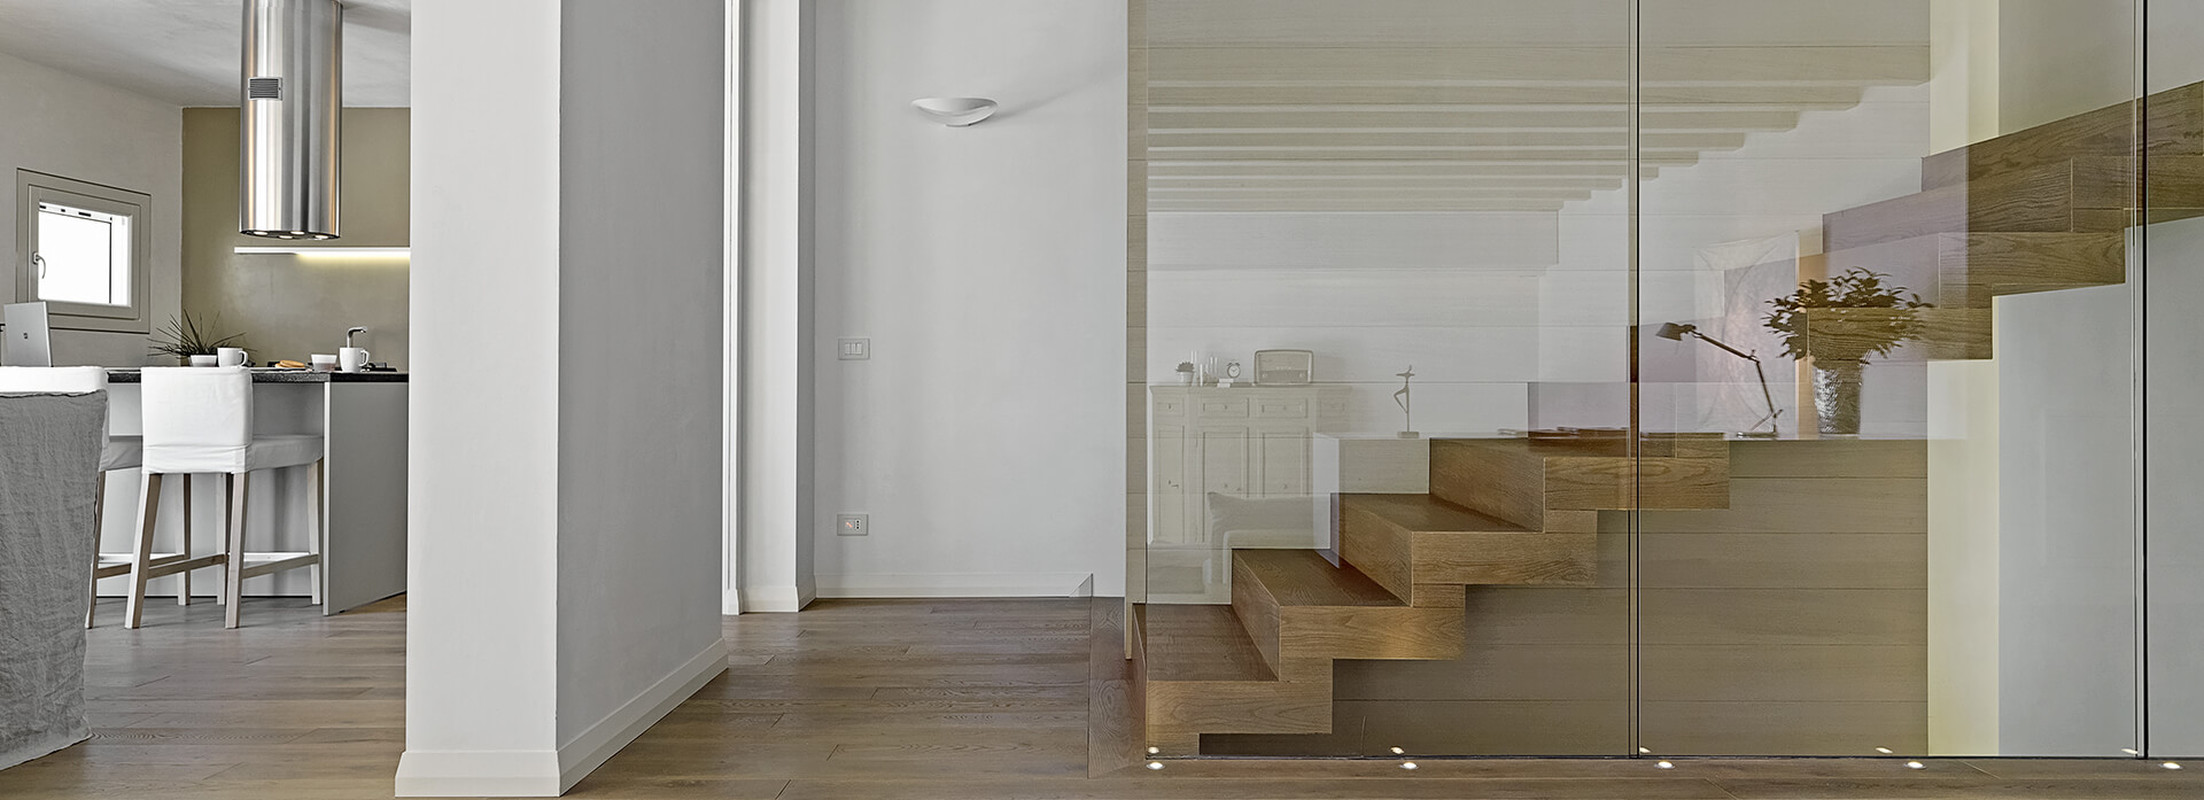 schody drewniane wewnętrzne jednobiegowe nowoczesne